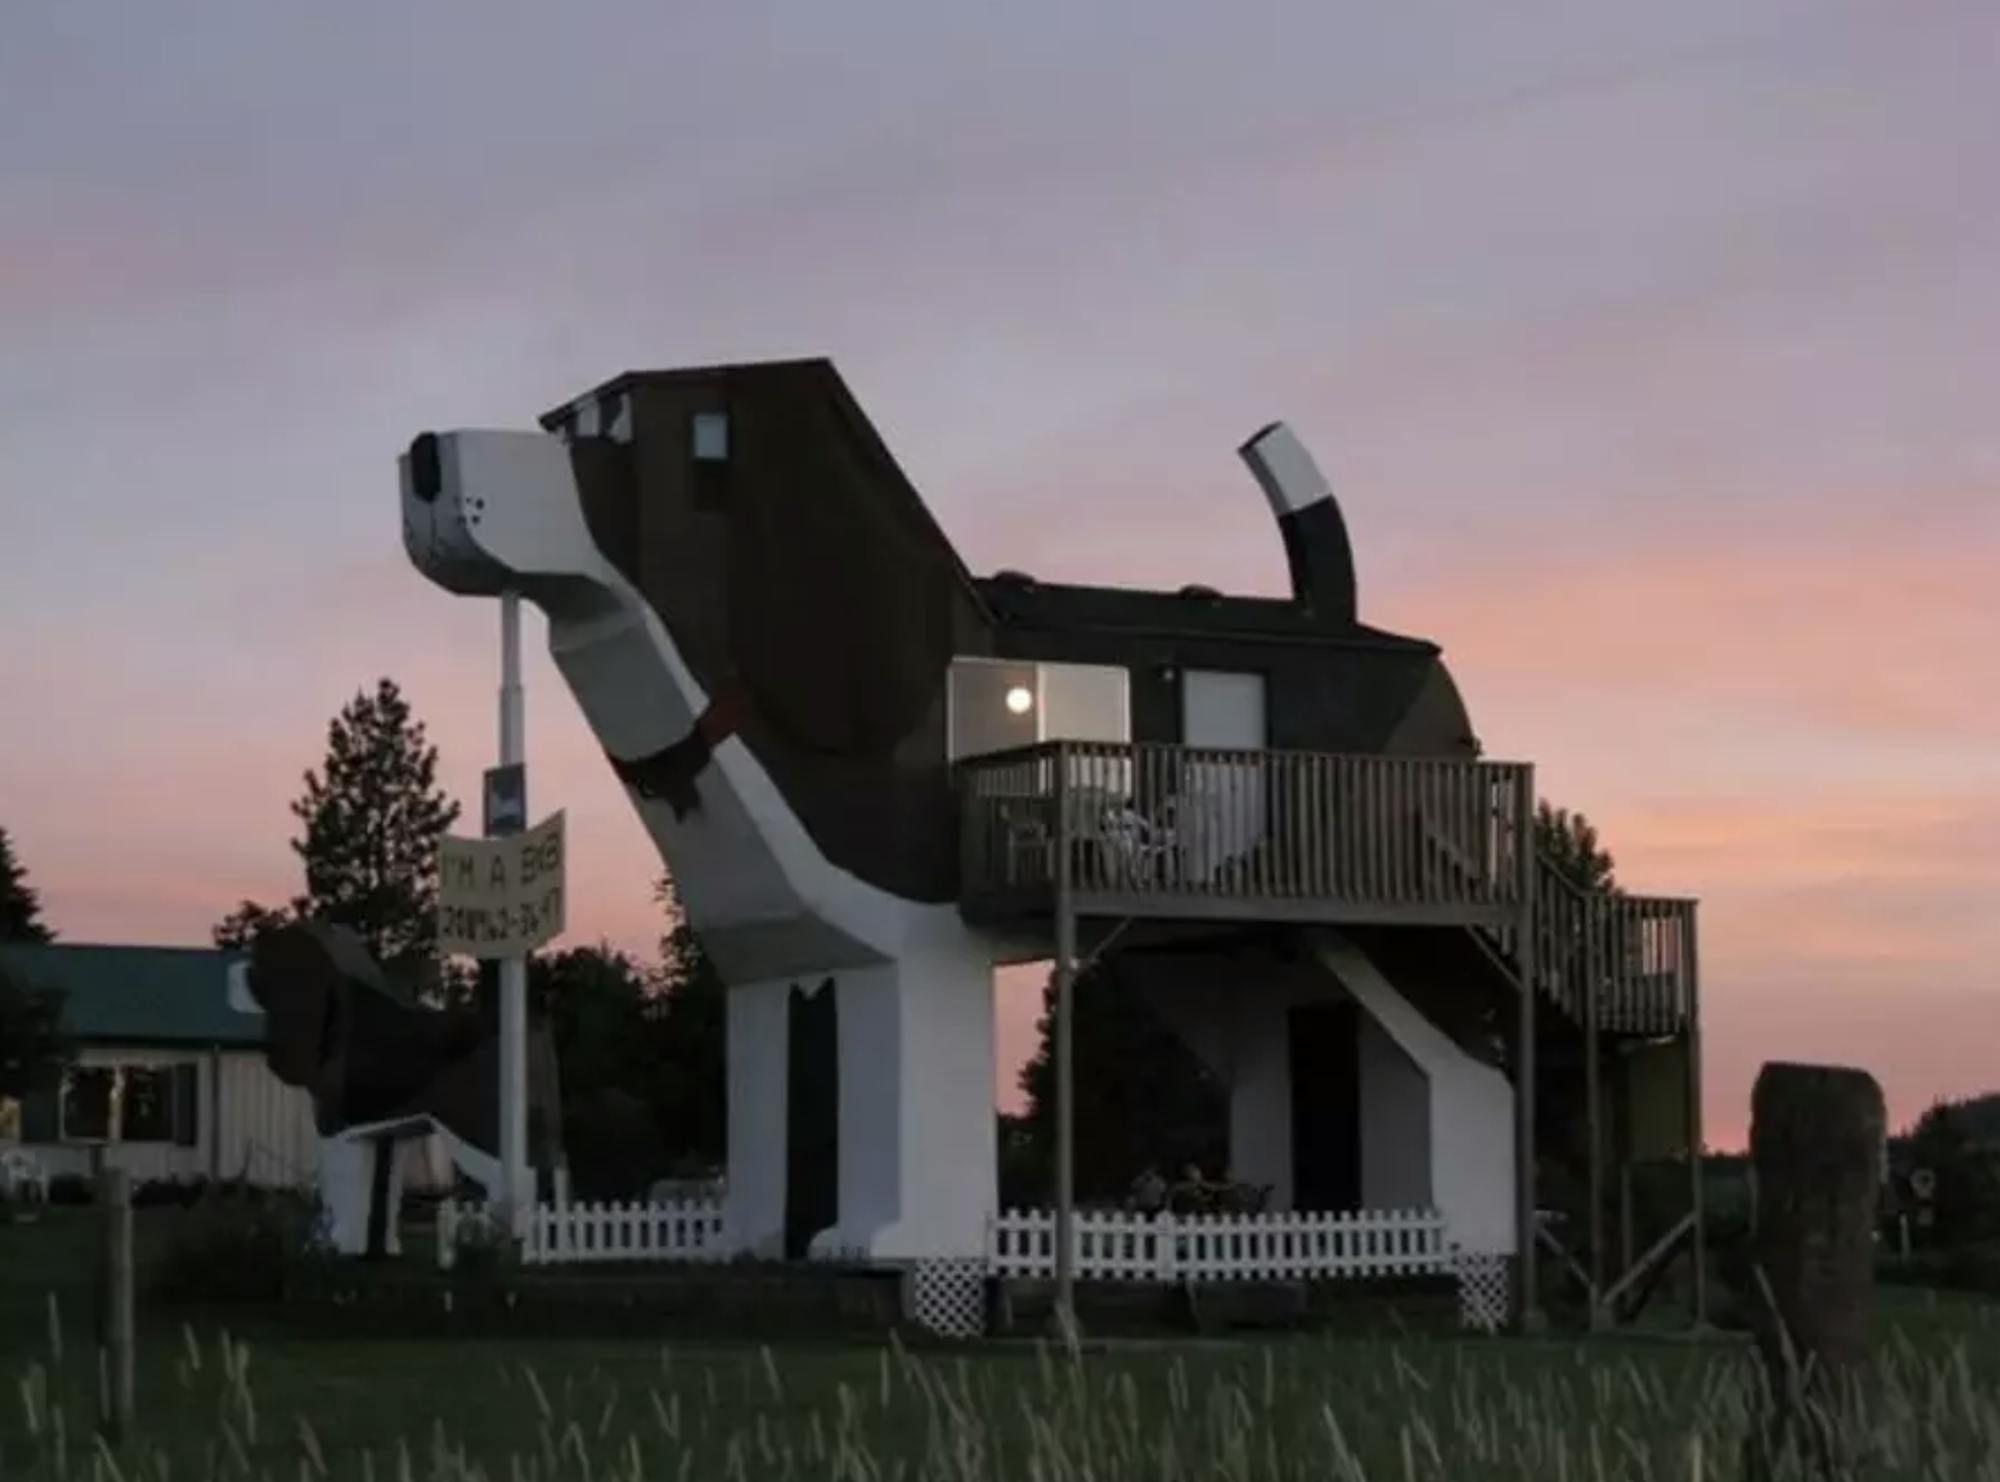 Jednopiętrowy domek wygląda jak ogromny pies. Z brzucha psa wychodzi balkon.